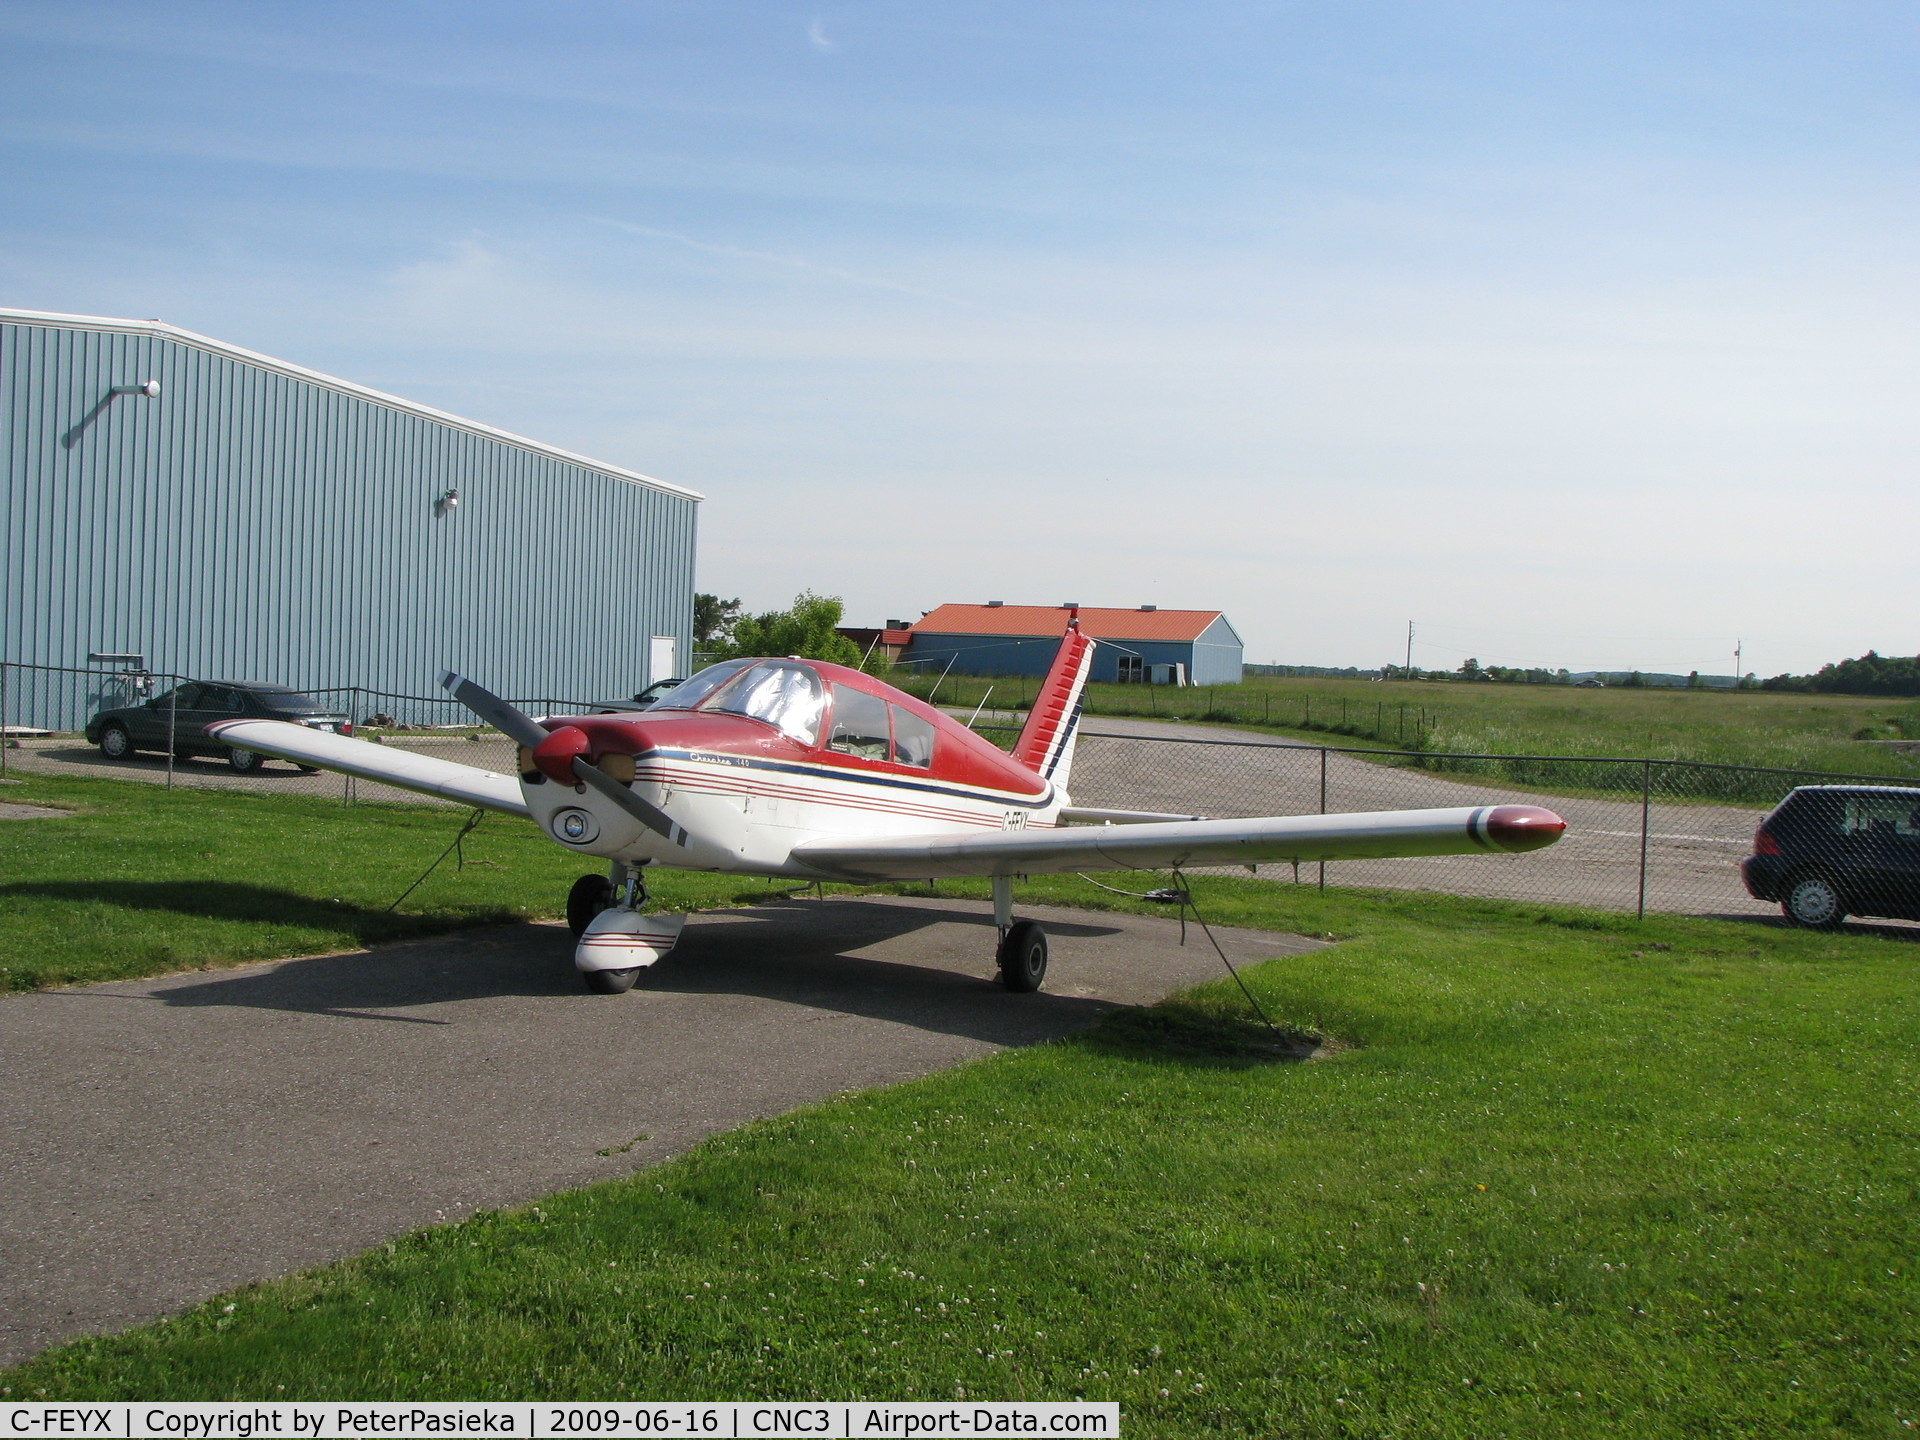 C-FEYX, 1967 Piper PA-28-140 C/N 28-22504, @ Brampton Airport